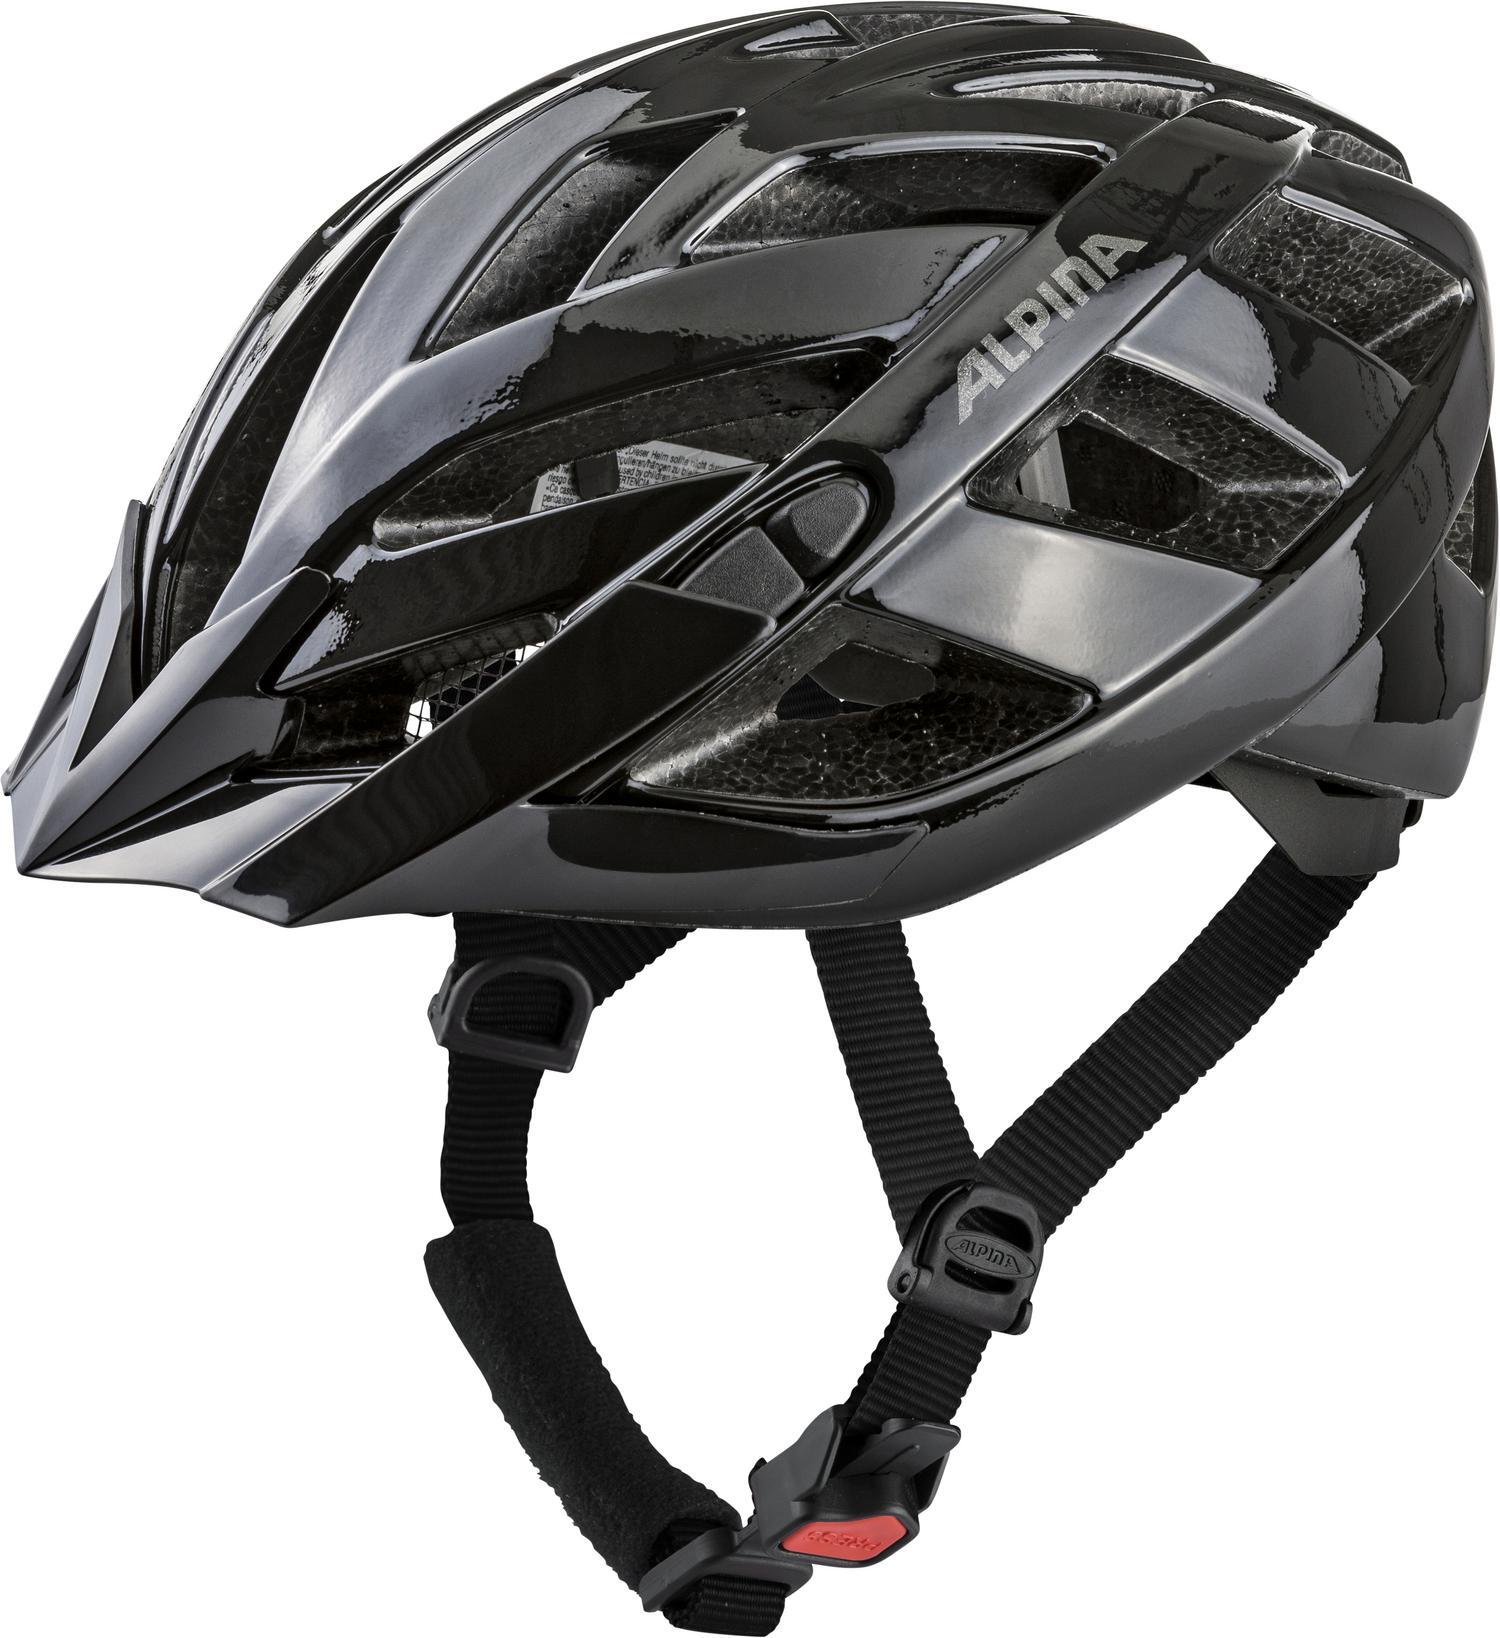 Велосипедный шлем Alpina Tour Panoma Classic, black, M